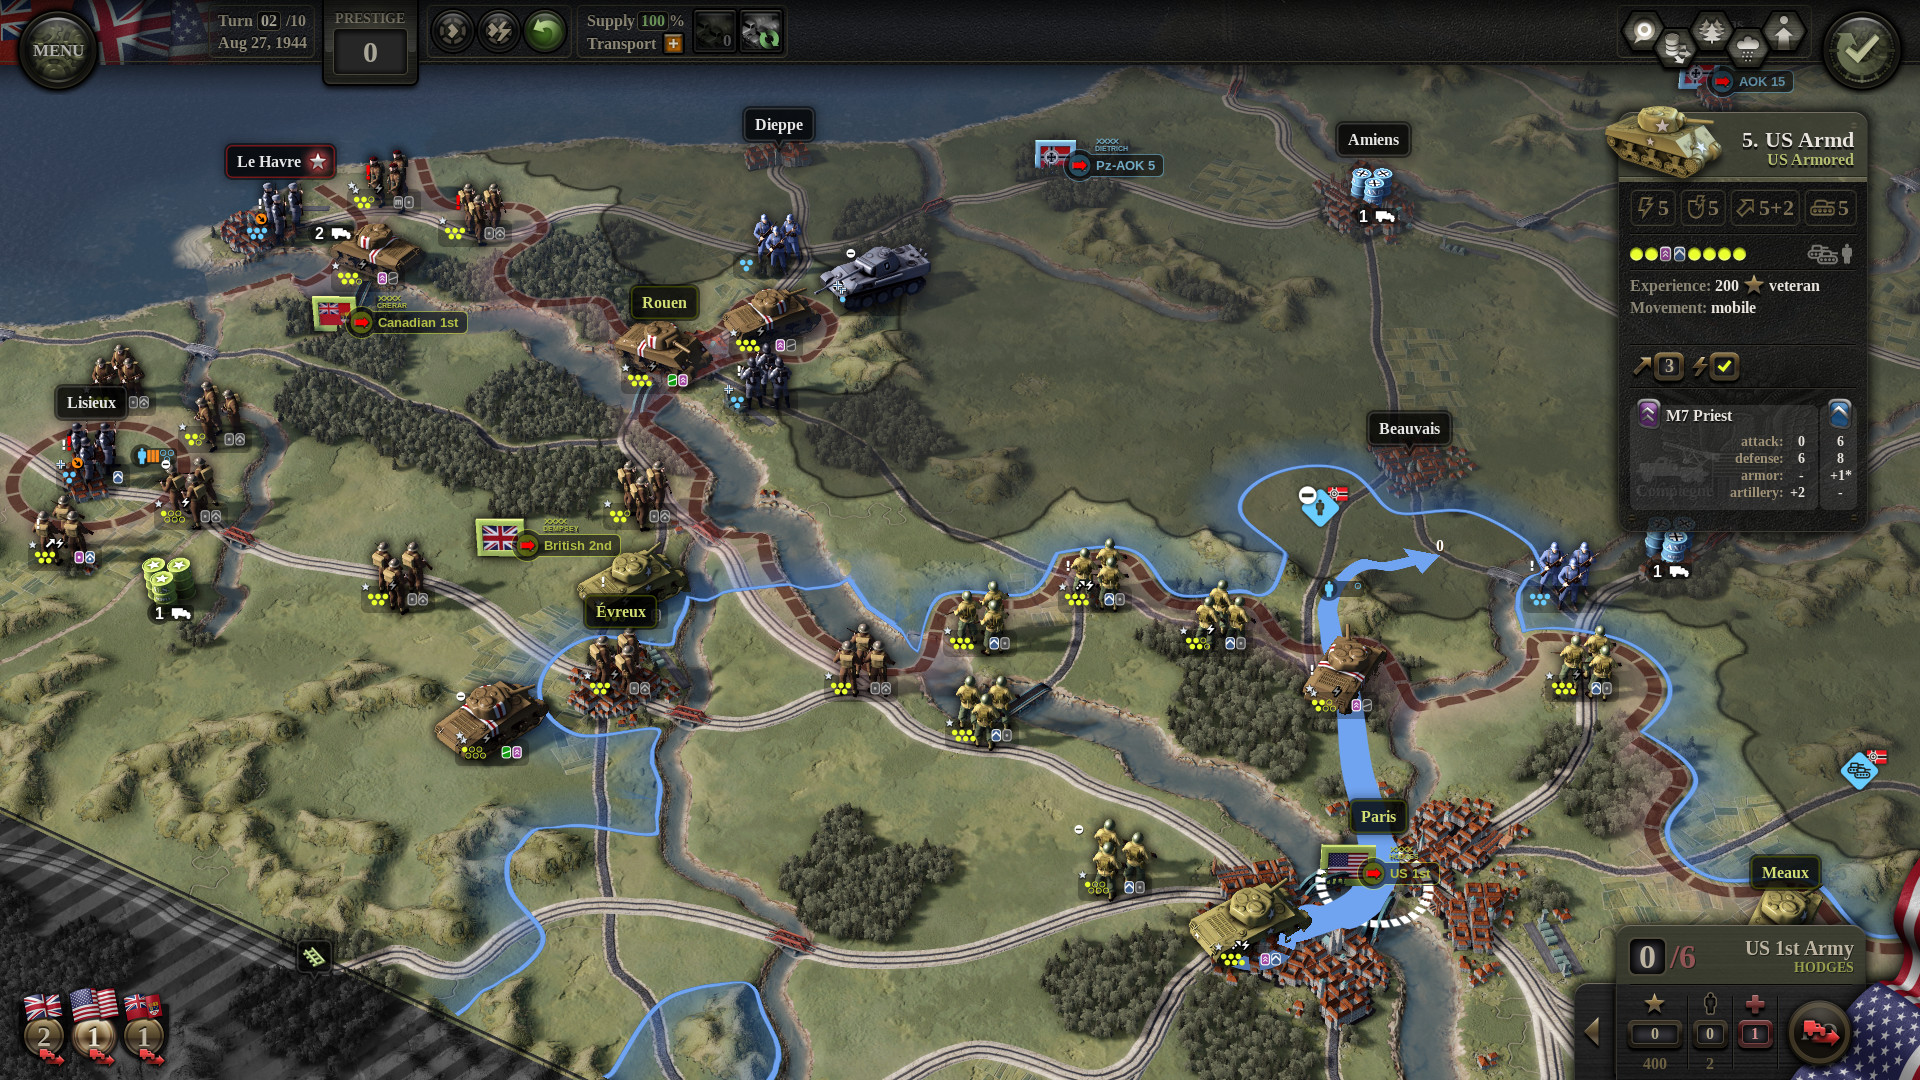 بہترین جنگ کے کھیل: کمانڈ کا اتحاد 2. امیج مختلف اسٹریٹجک راستوں اور اس پر رکھے گئے فوجیوں کے ساتھ نقشہ دکھاتا ہے۔